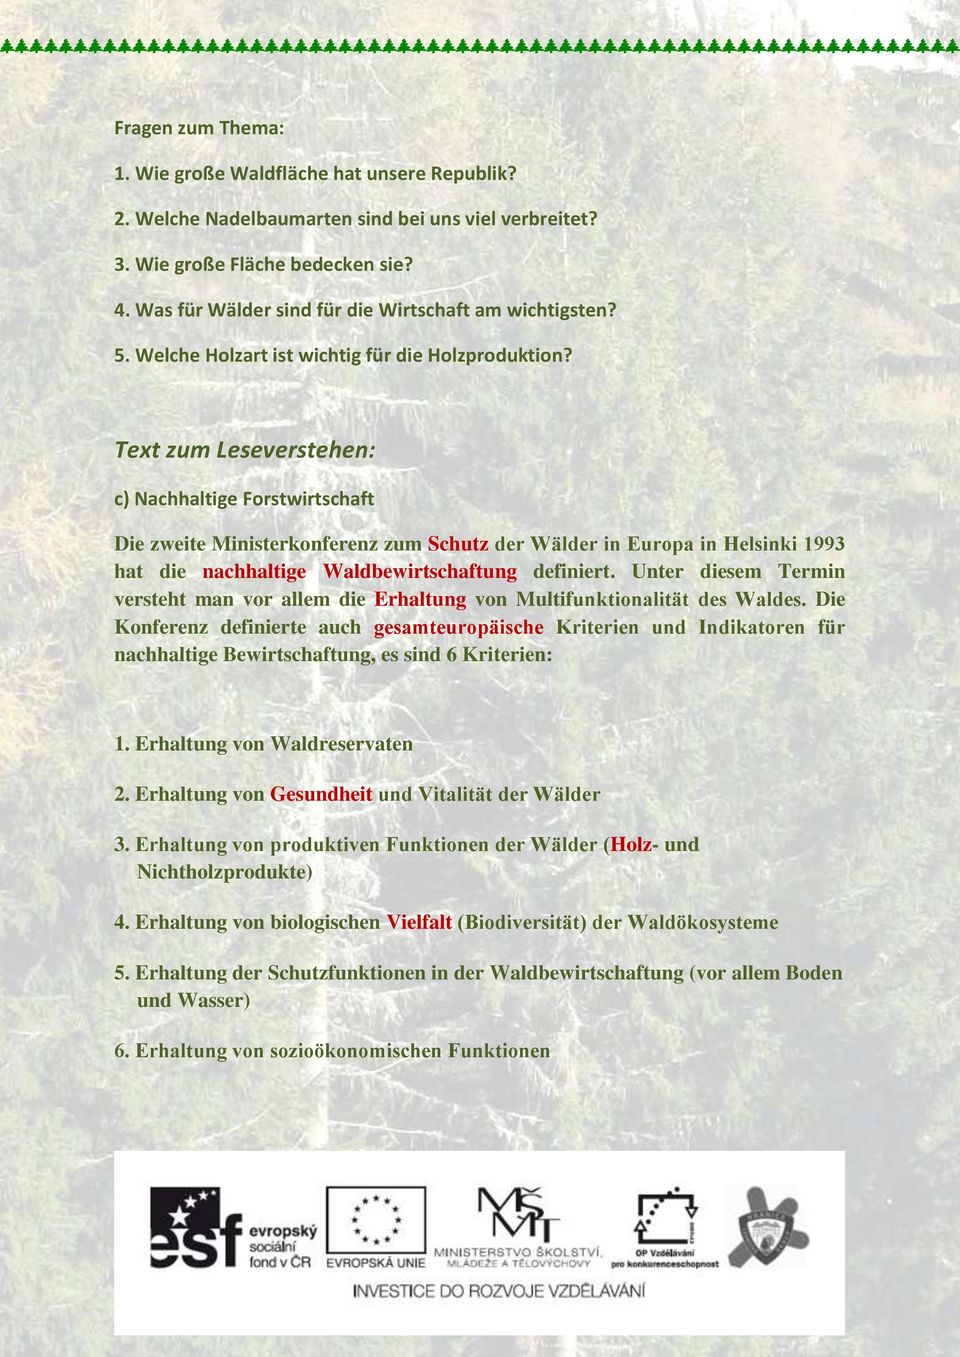 Text zum Leseverstehen: c) Nachhaltige Forstwirtschaft Die zweite Ministerkonferenz zum Schutz der Wälder in Europa in Helsinki 1993 hat die nachhaltige Waldbewirtschaftung definiert.